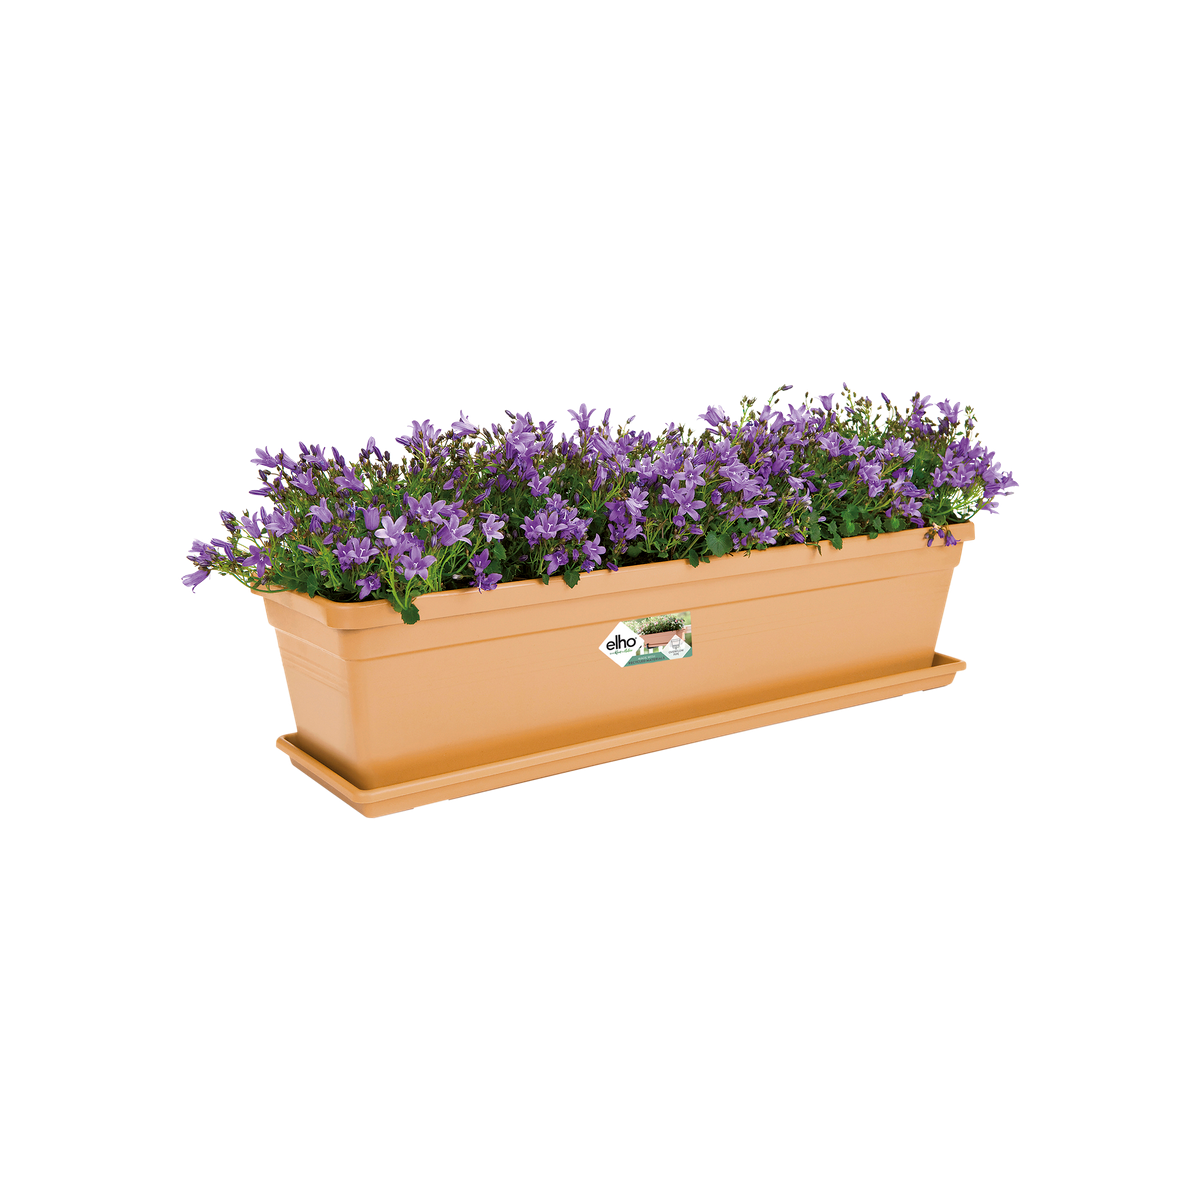 Elho Green Basics Campana 40 Vaso da fiori mite terra per esterni NUOVO 